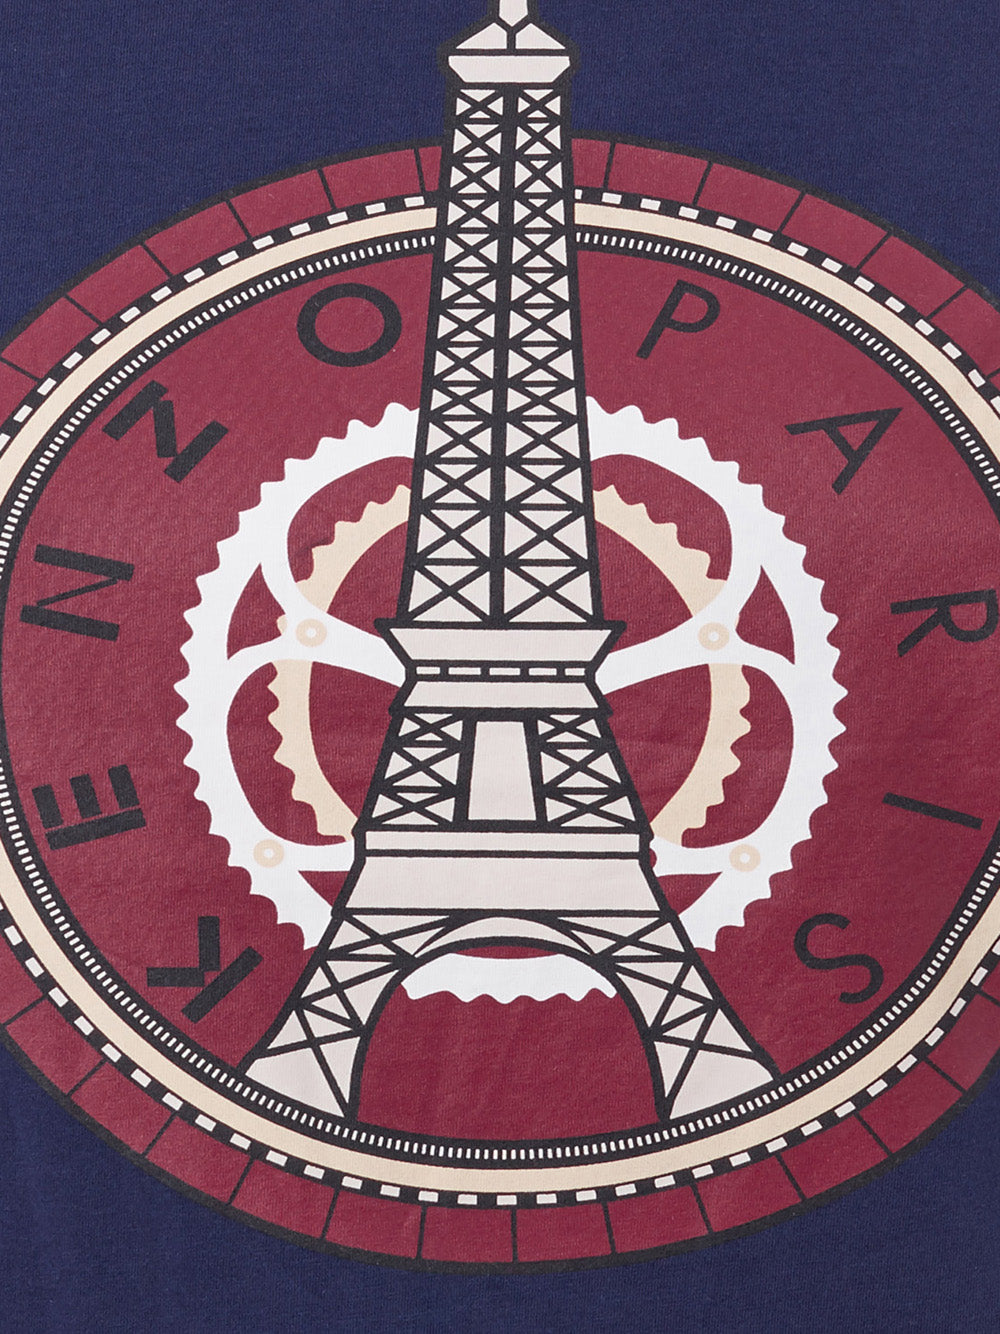 Camiseta Kenzo Tour Eiffel